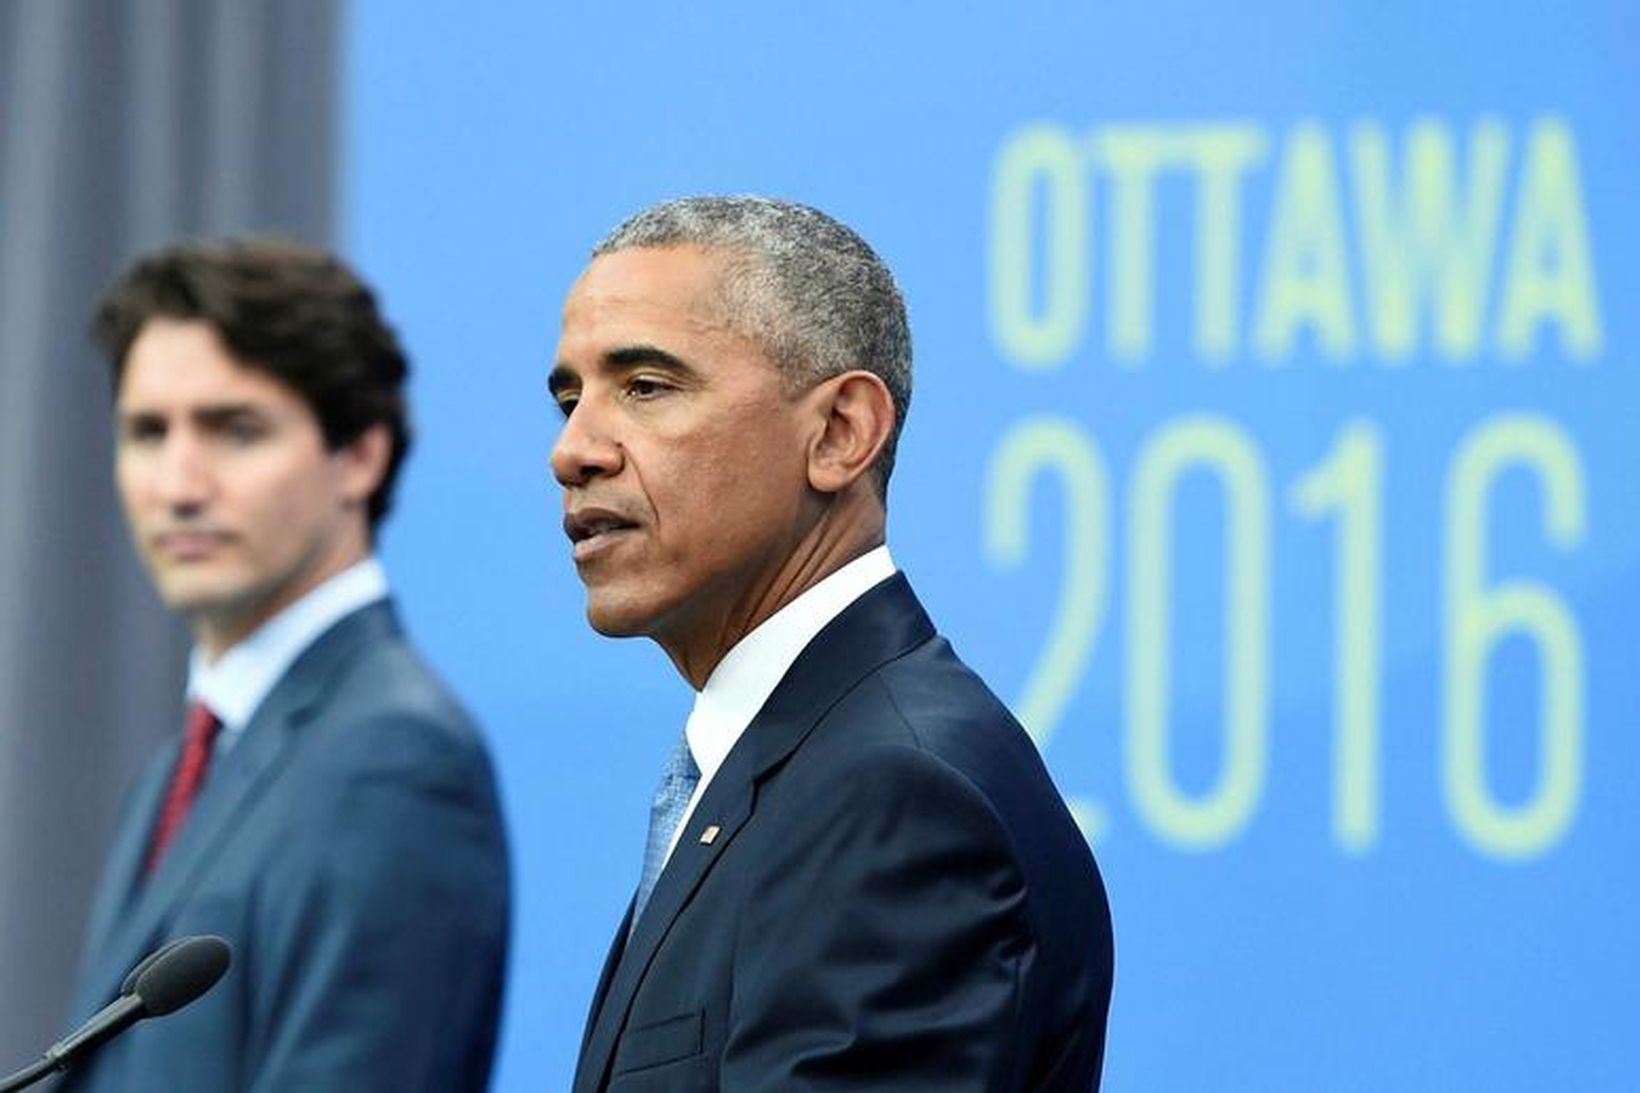 Barack Obama ásamt Justin Trudeau, forsætisráðherra Kanada, á leiðtogafundinum í …